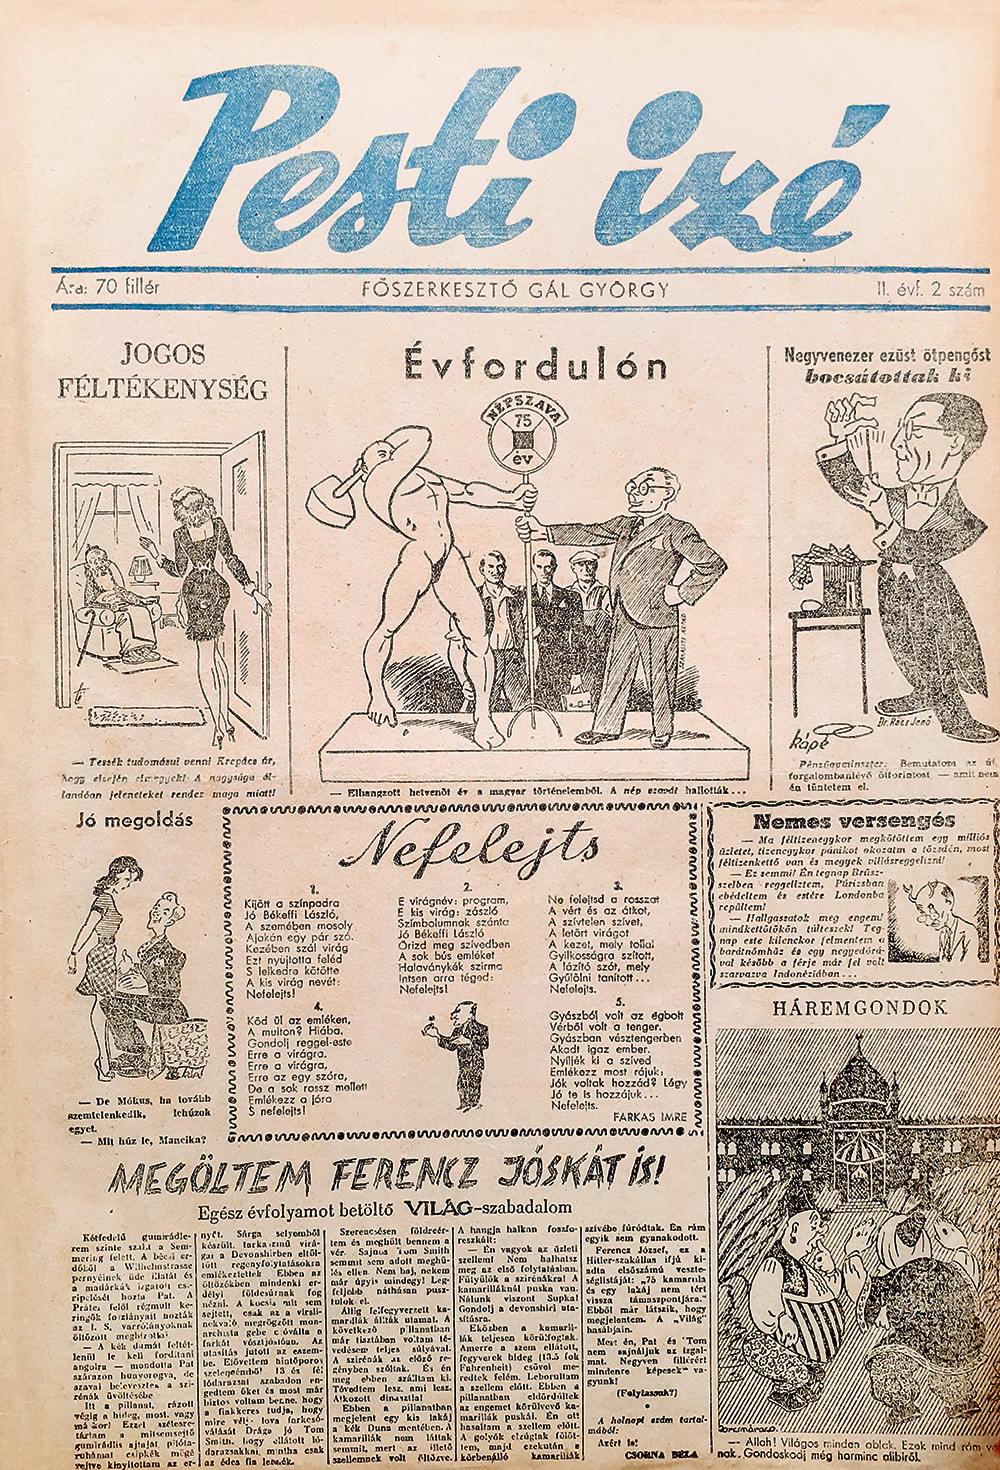 Pesti Izé-címlap, II. évf. (1947) 2. sz.